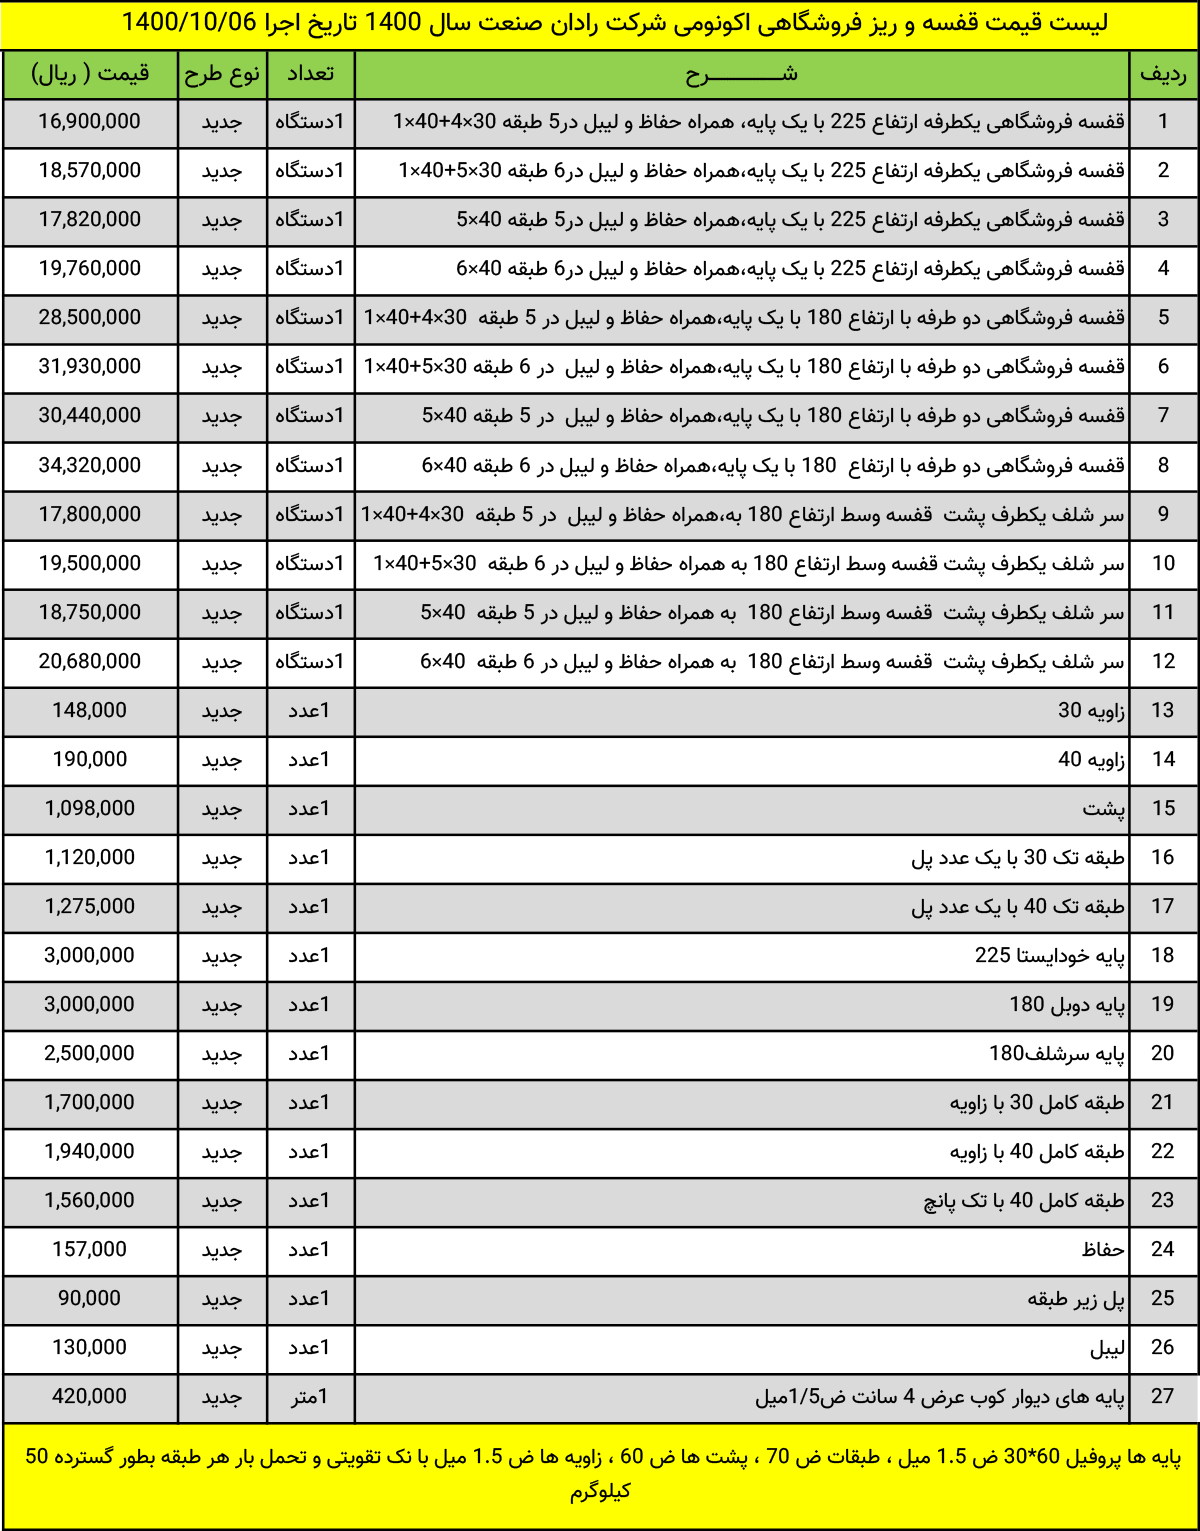 لیست قیمت تجهیزات و قفسه بندی فروشگاهی شرکت رادان صنعت شرق دی ماه سال 1400 تاریخ 1400/10/06